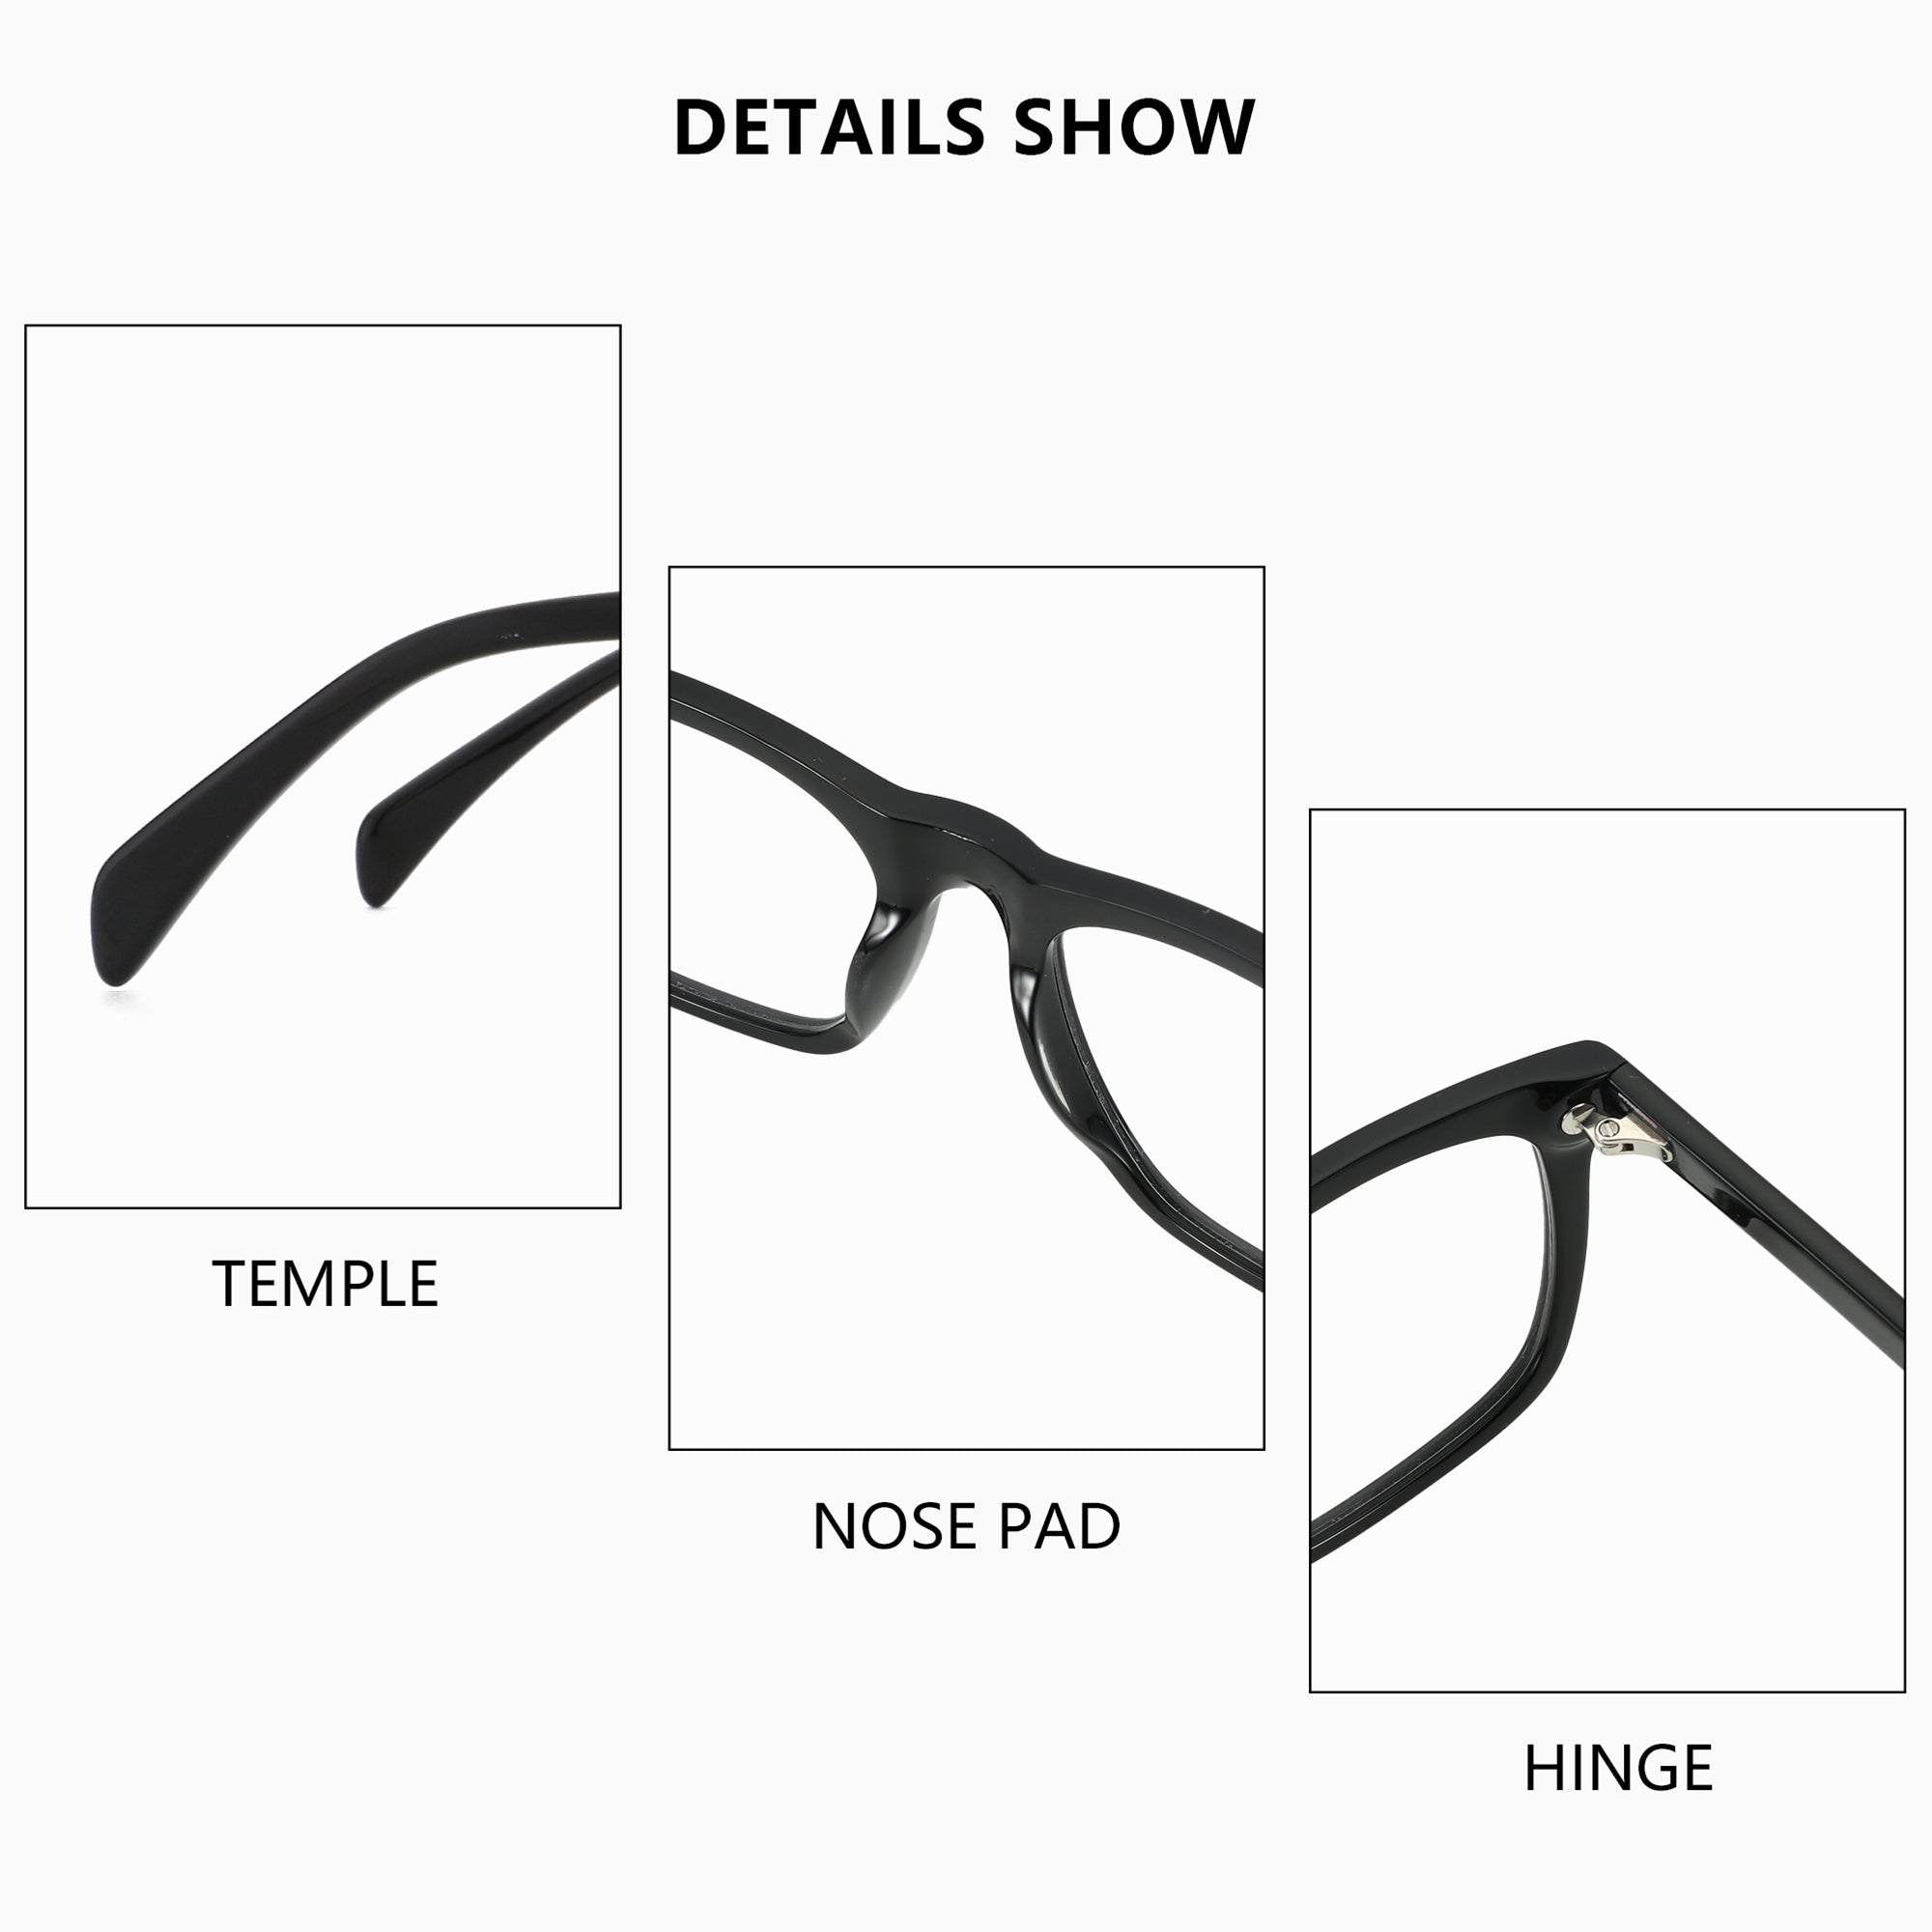 Zenottic Eyeglasses Lee